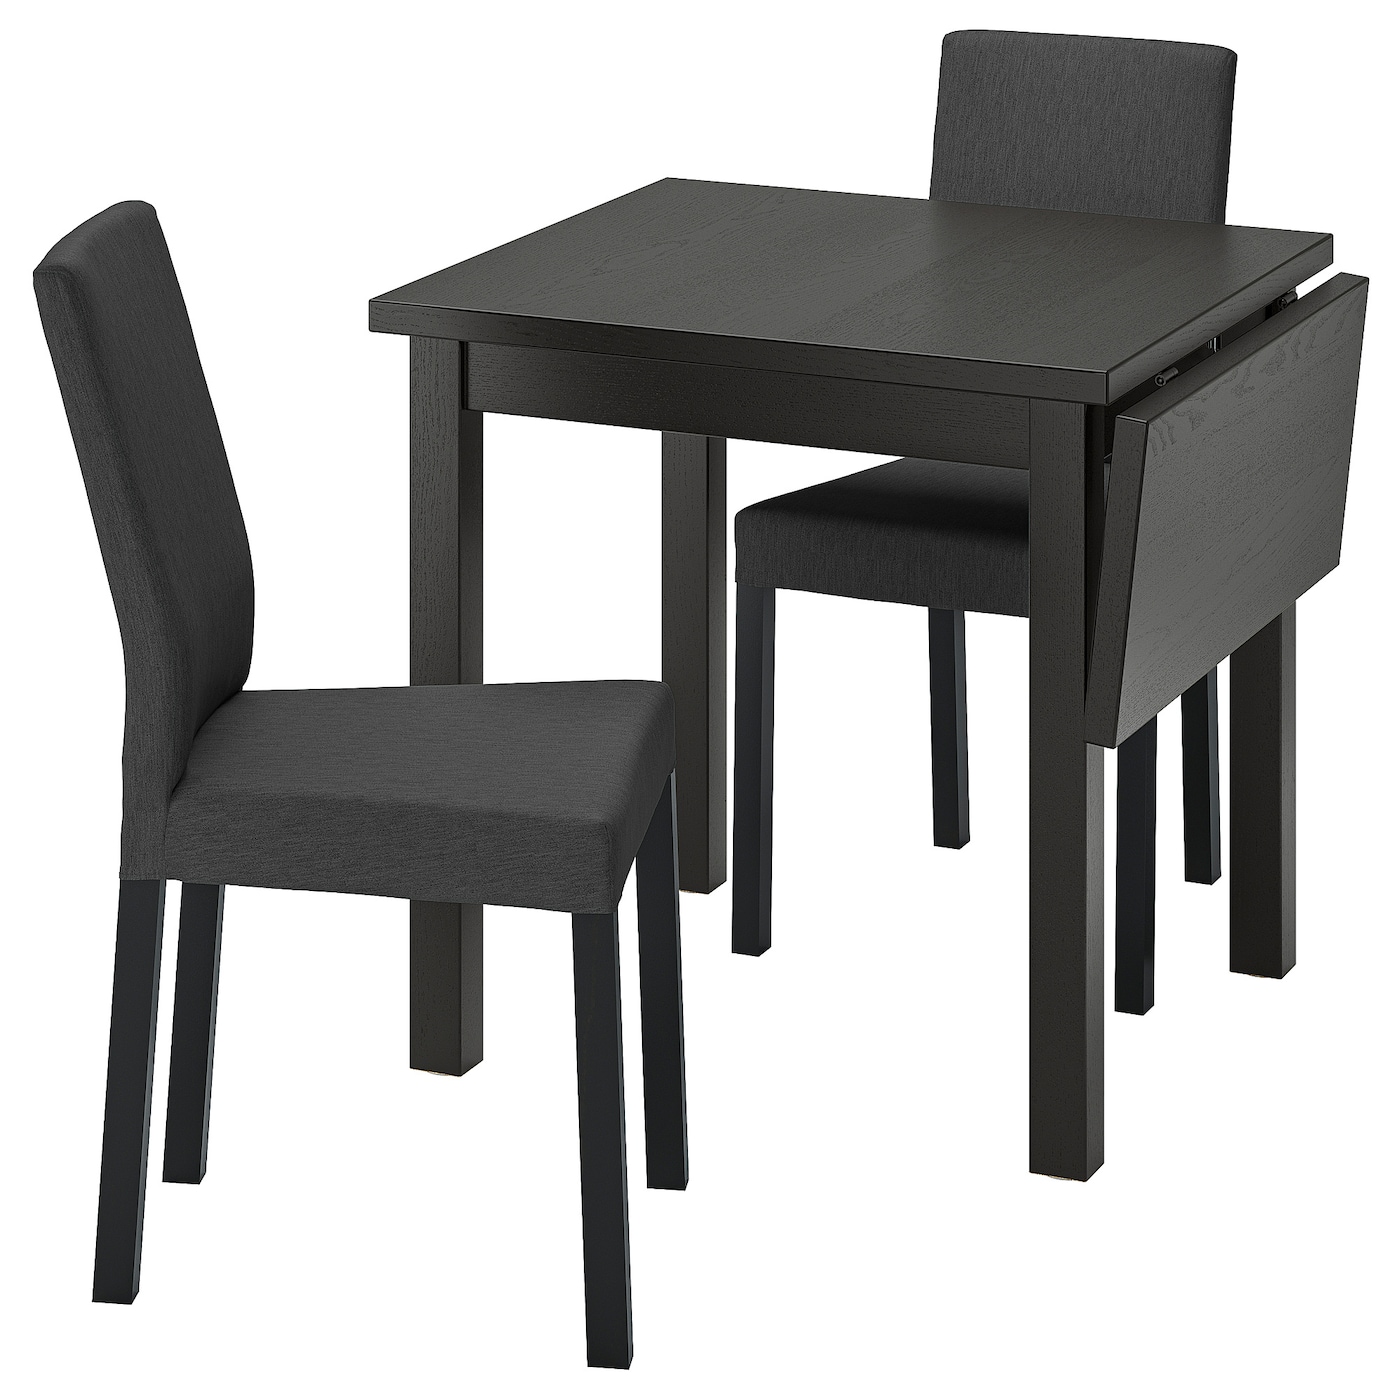 NORDVIKEN / KÄTTIL Tisch und 2 Stühle  -  - Möbel Ideen für dein Zuhause von Home Trends. Möbel Trends von Social Media Influencer für dein Skandi Zuhause.